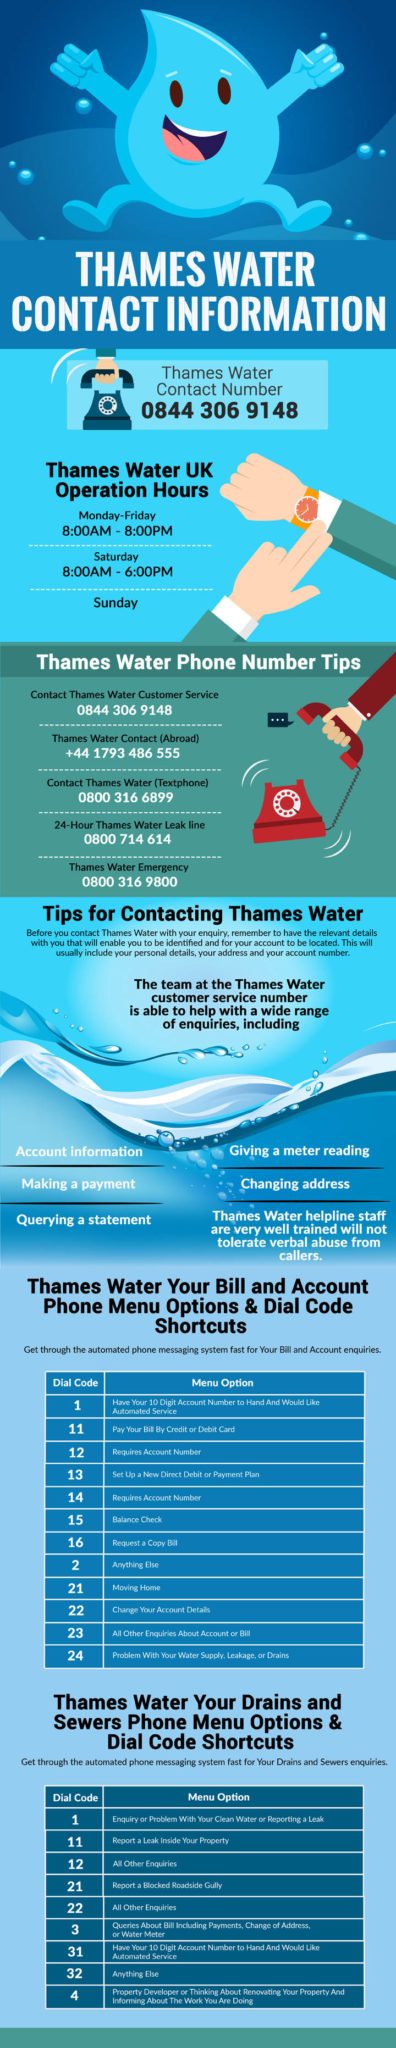 Thames Water Helpline